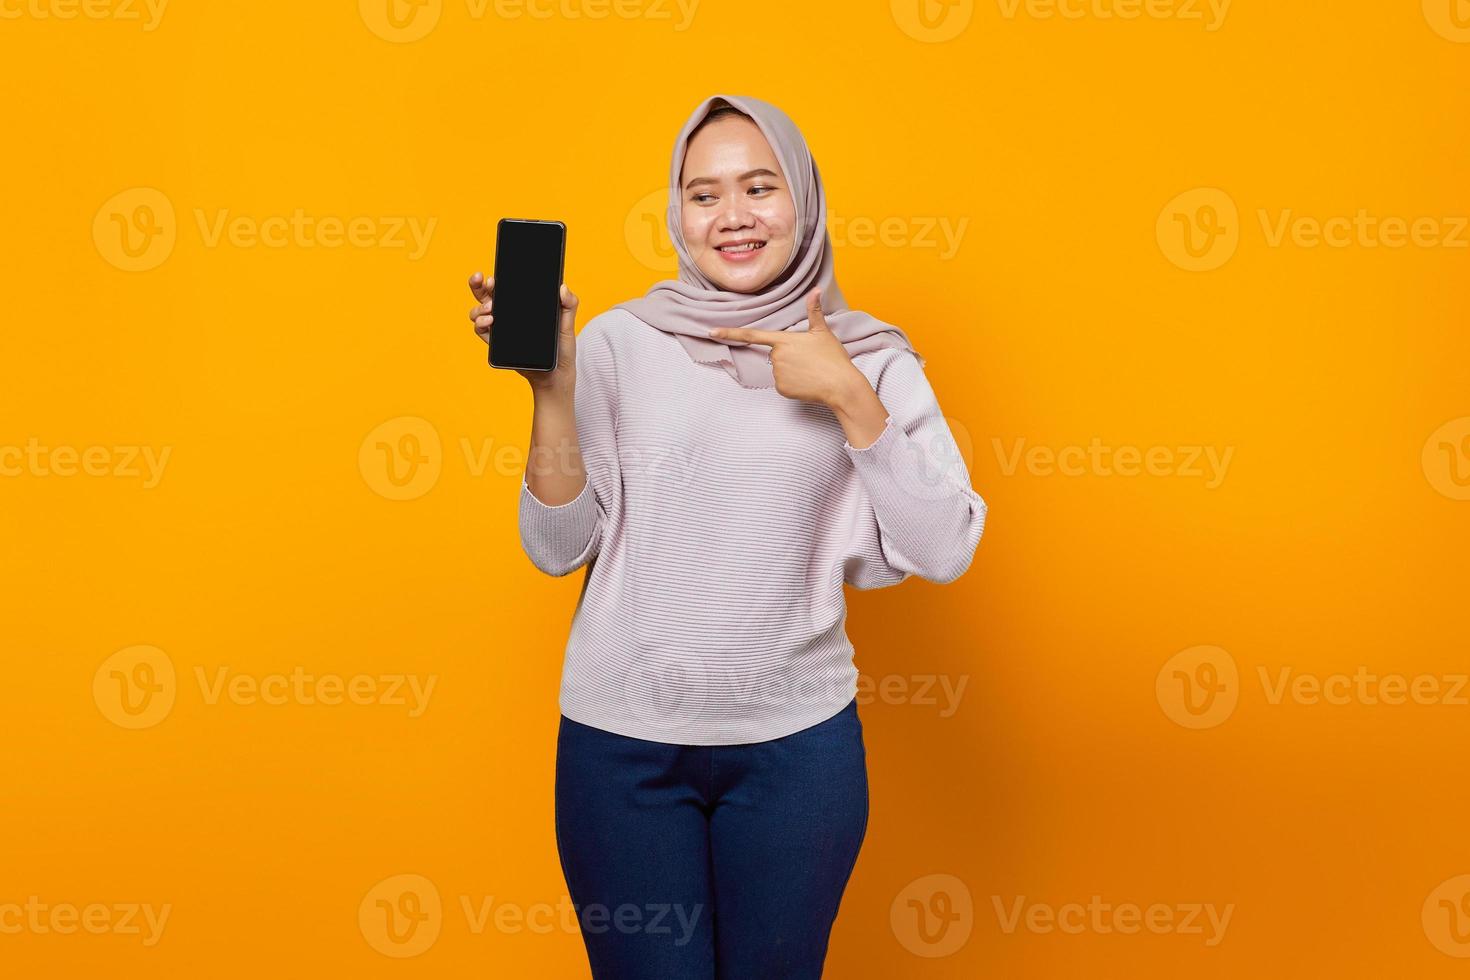 mulher asiática jovem e alegre mostrando a tela em branco do smartphone isolada sobre fundo amarelo foto